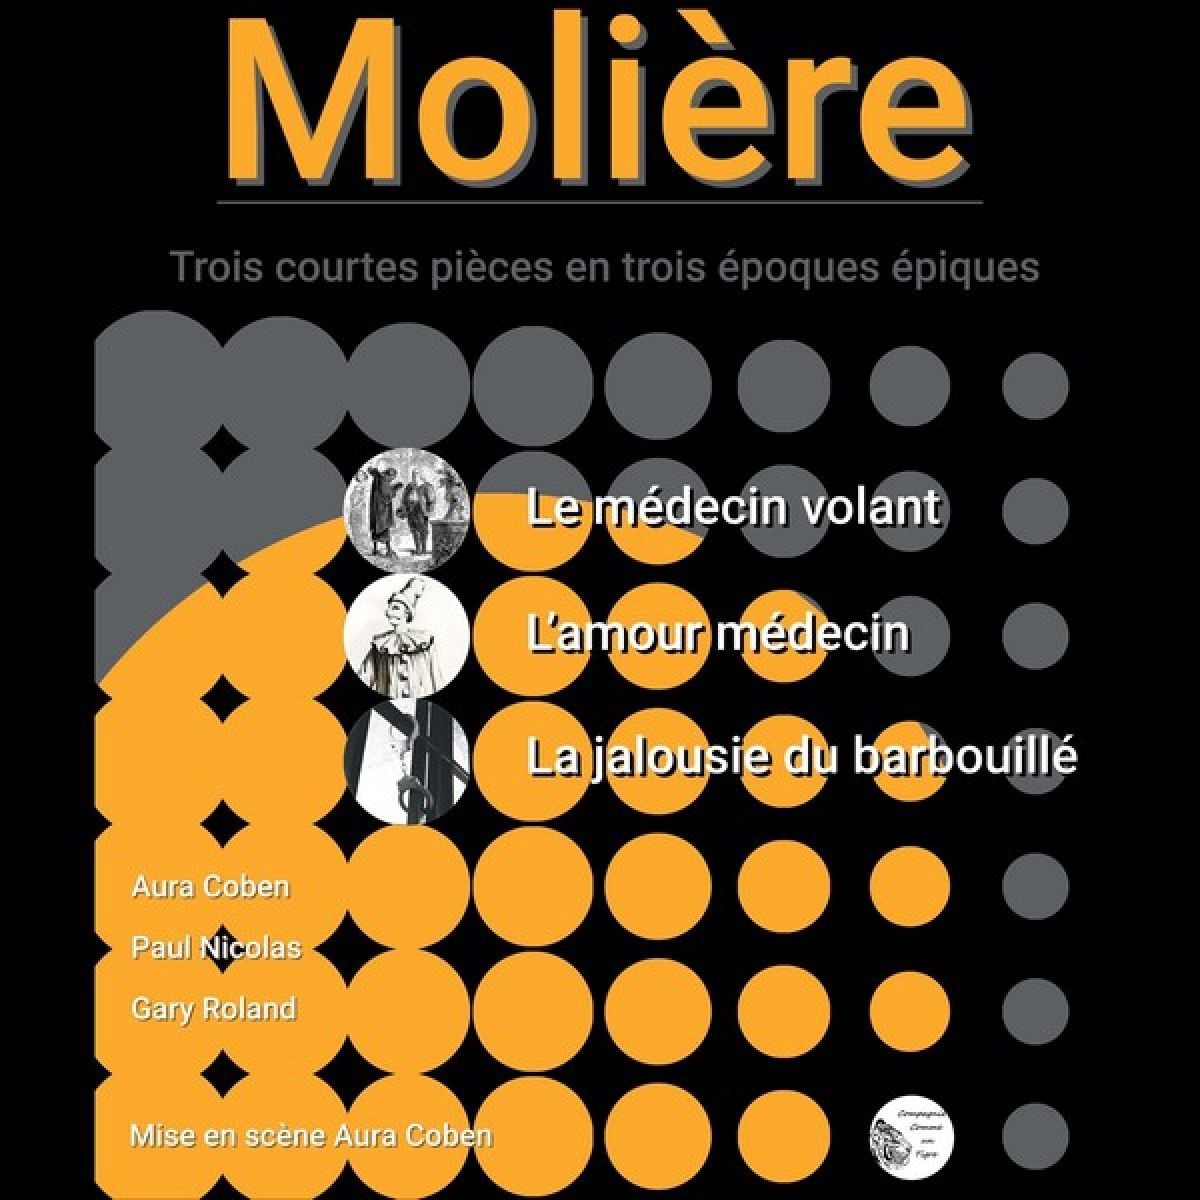 Trois courtes pièces... de Molière